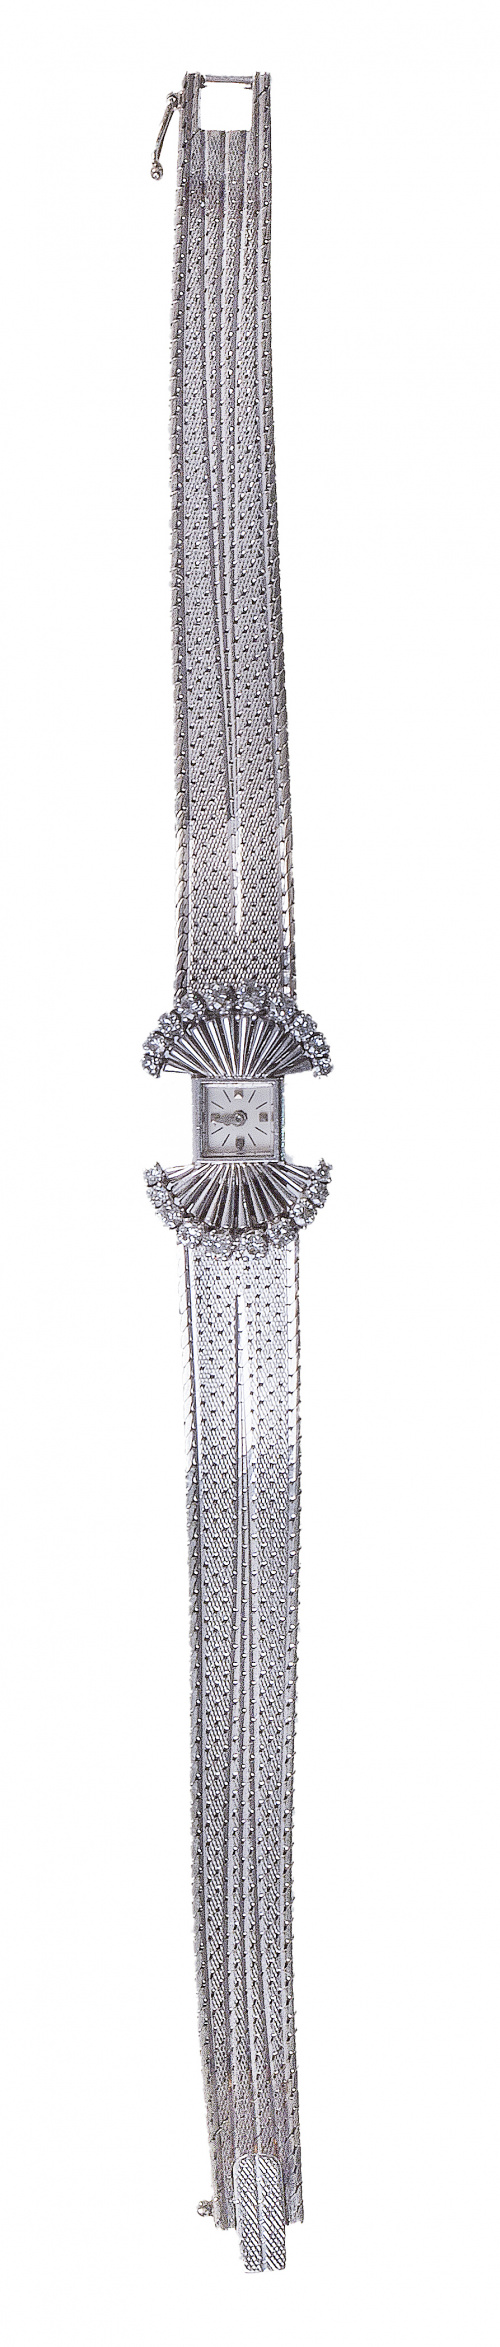 Reloj de pulsera Vacheron Constantin años 60 con brillantes